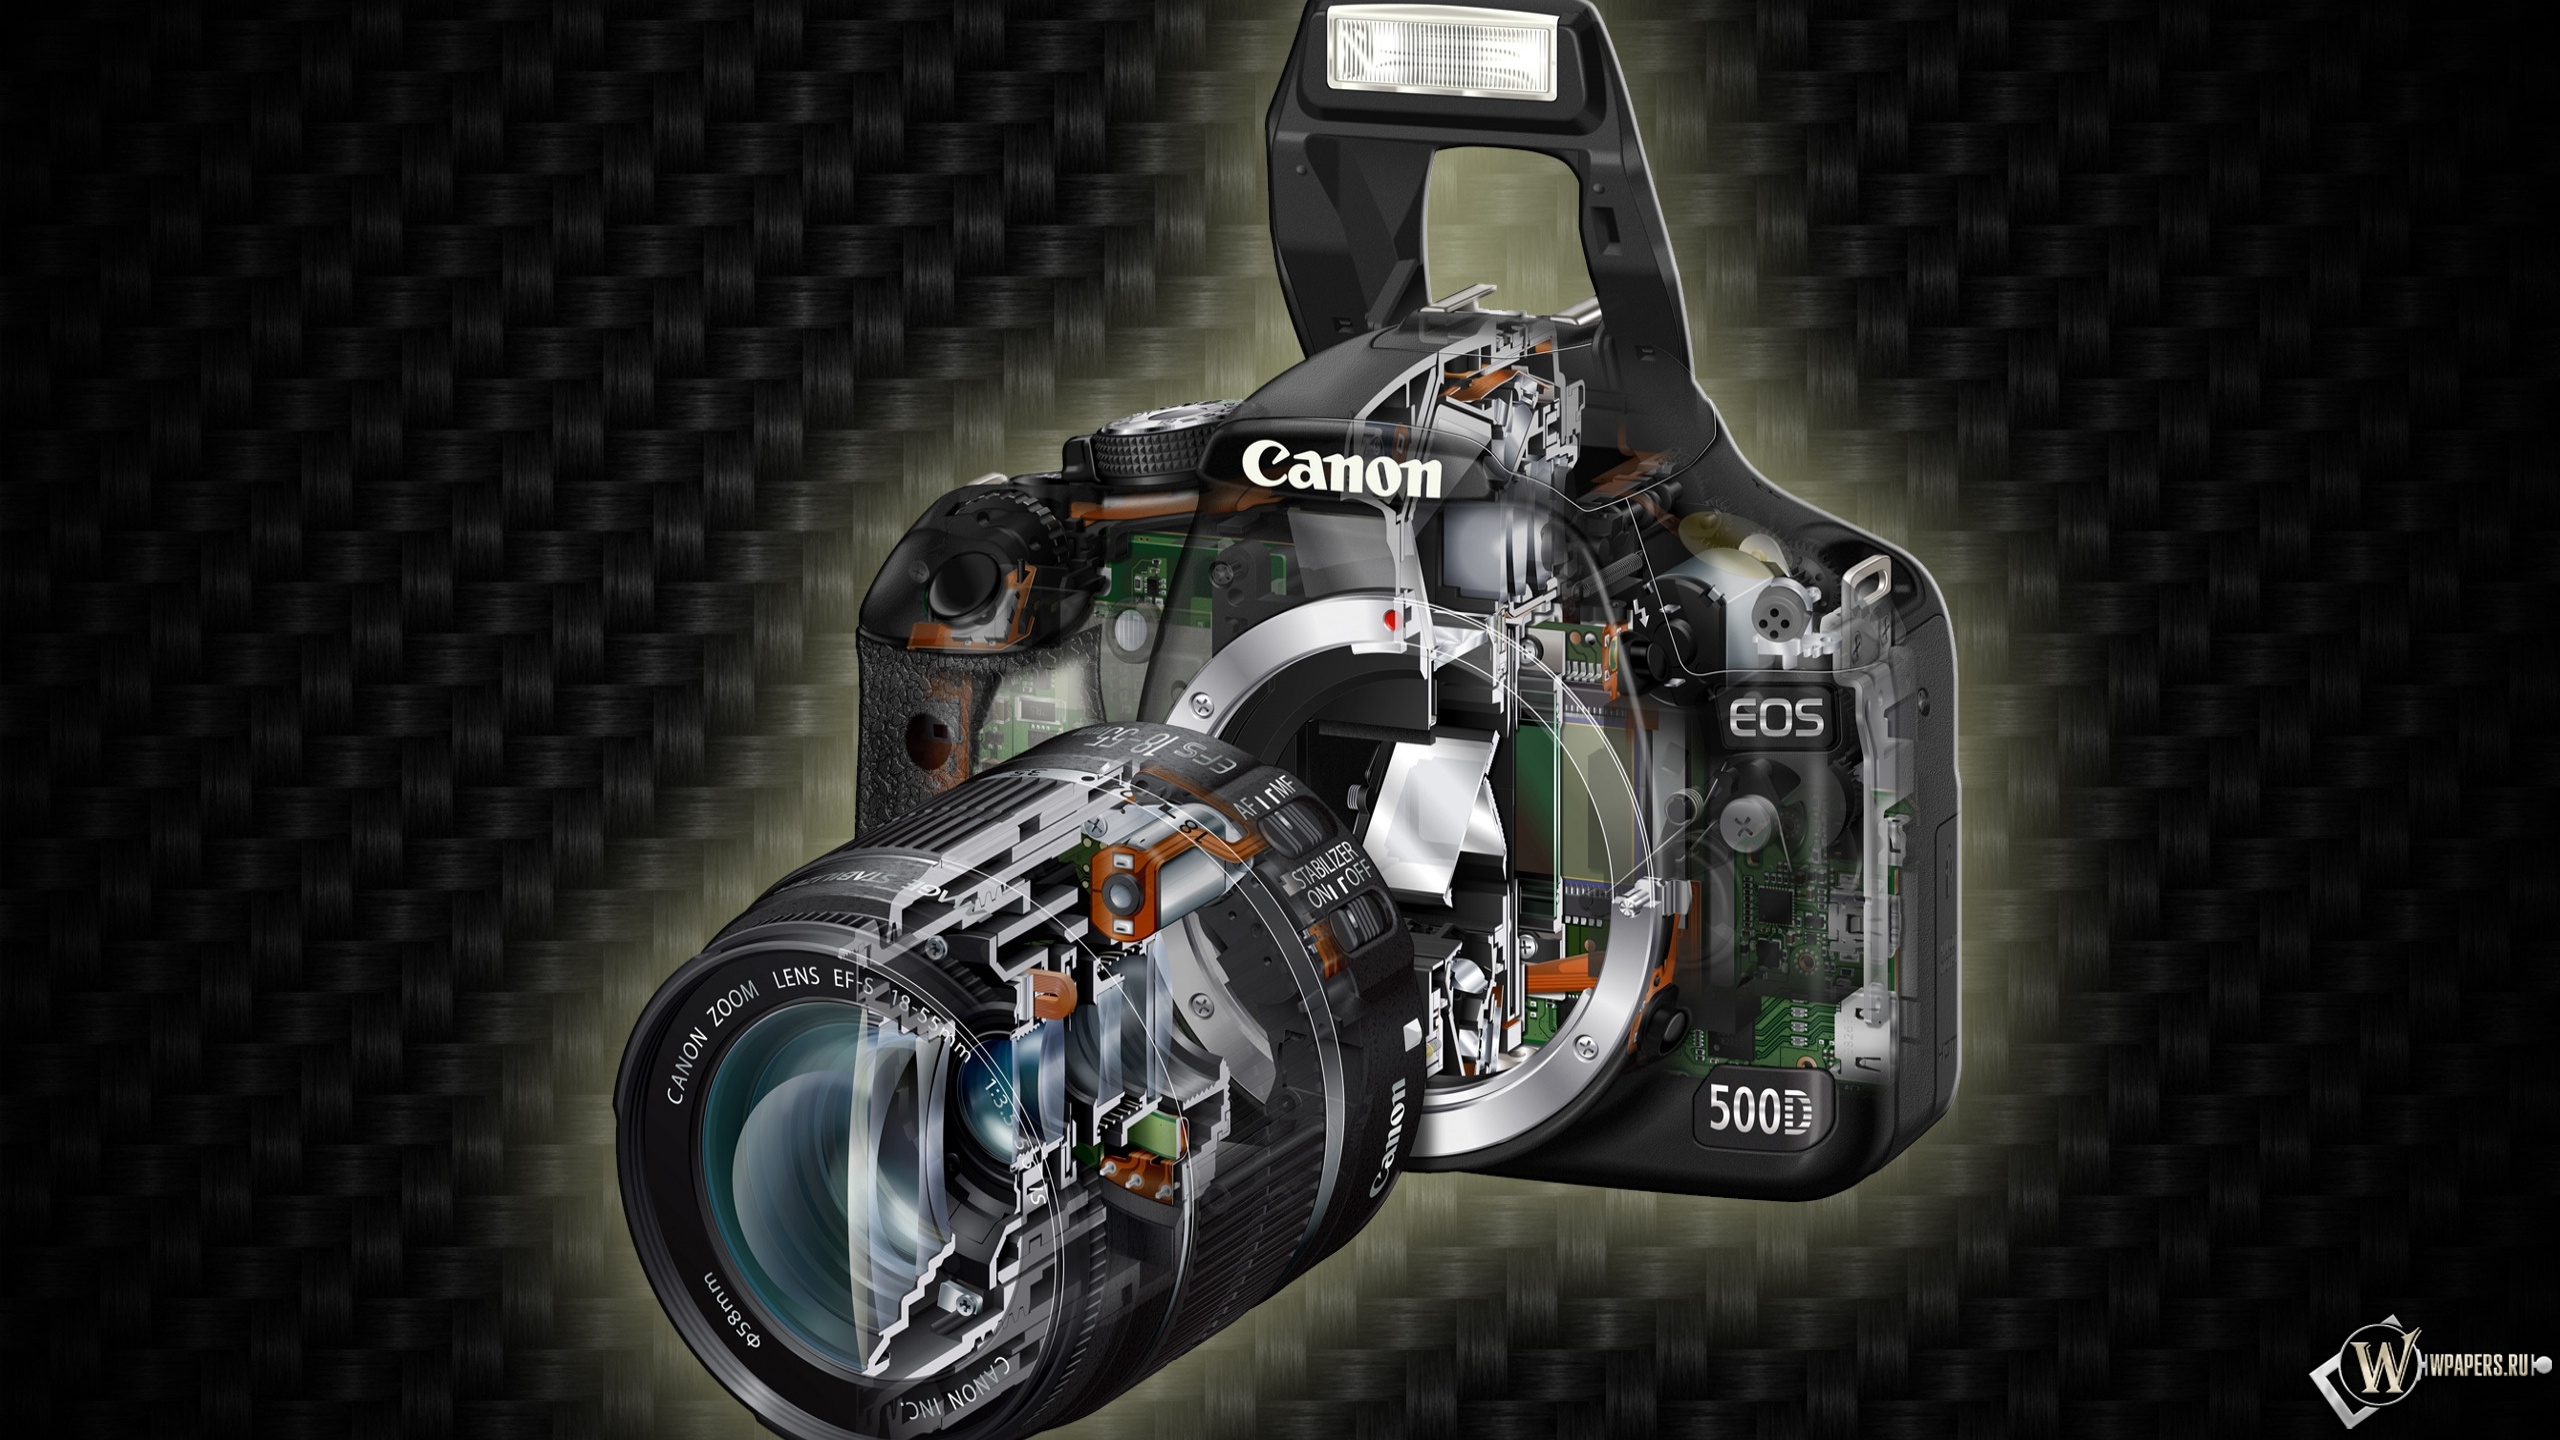 Canon, Eos 500d 2560x1440